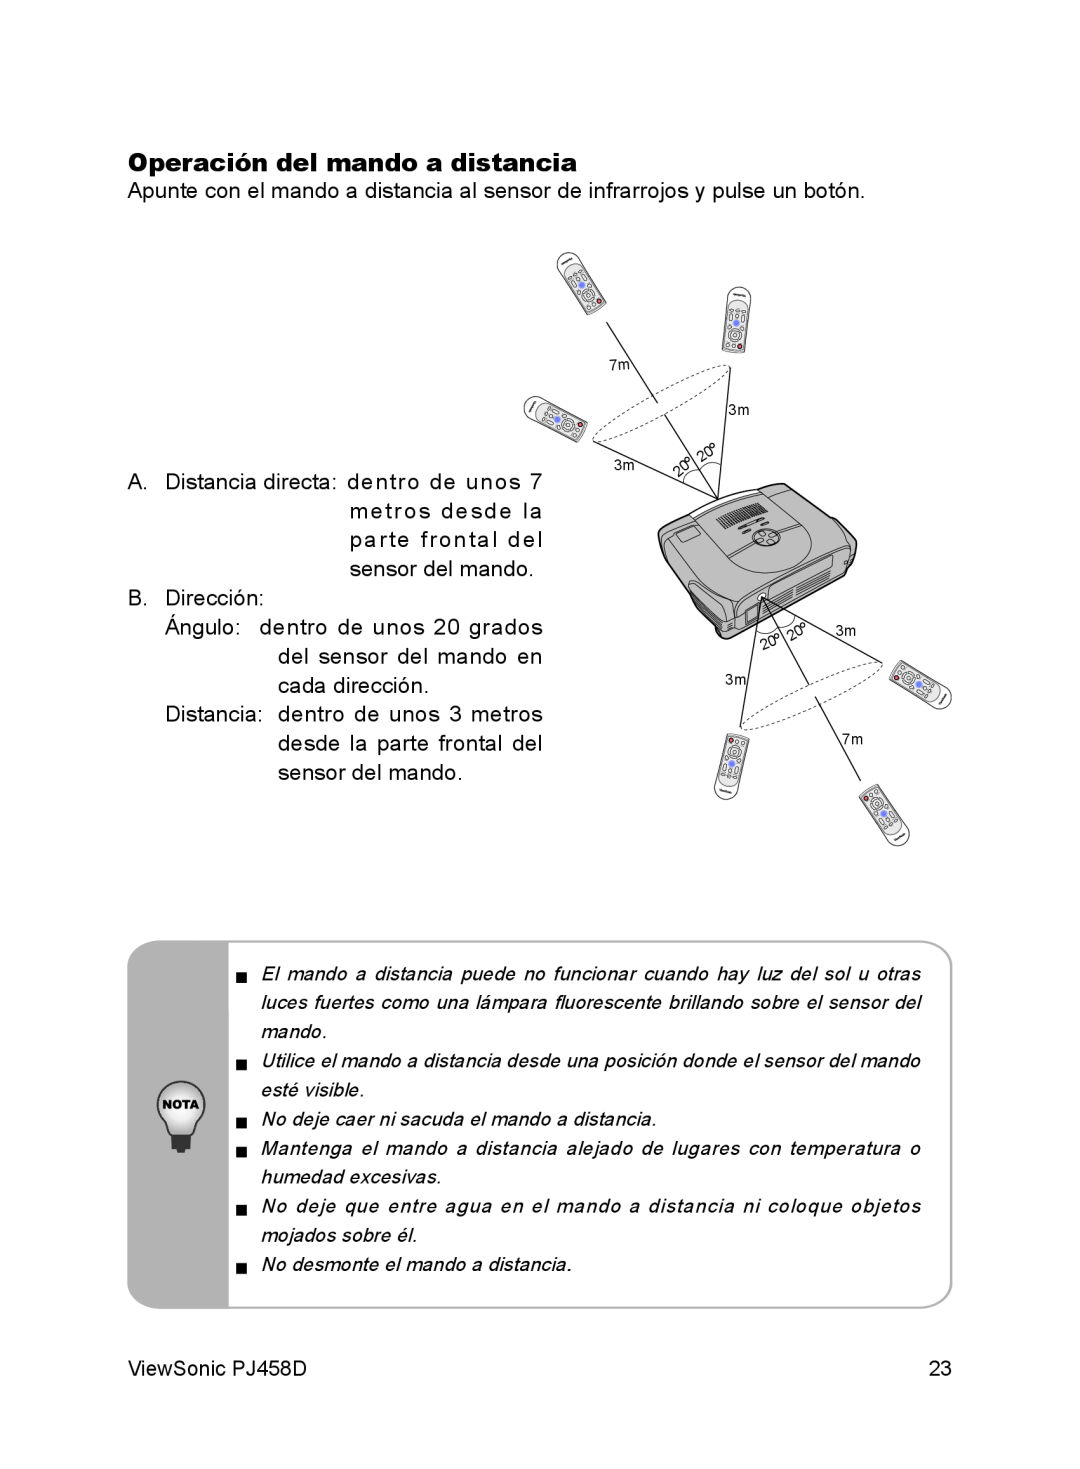 ViewSonic VS10872 manual Operación del mando a distancia 